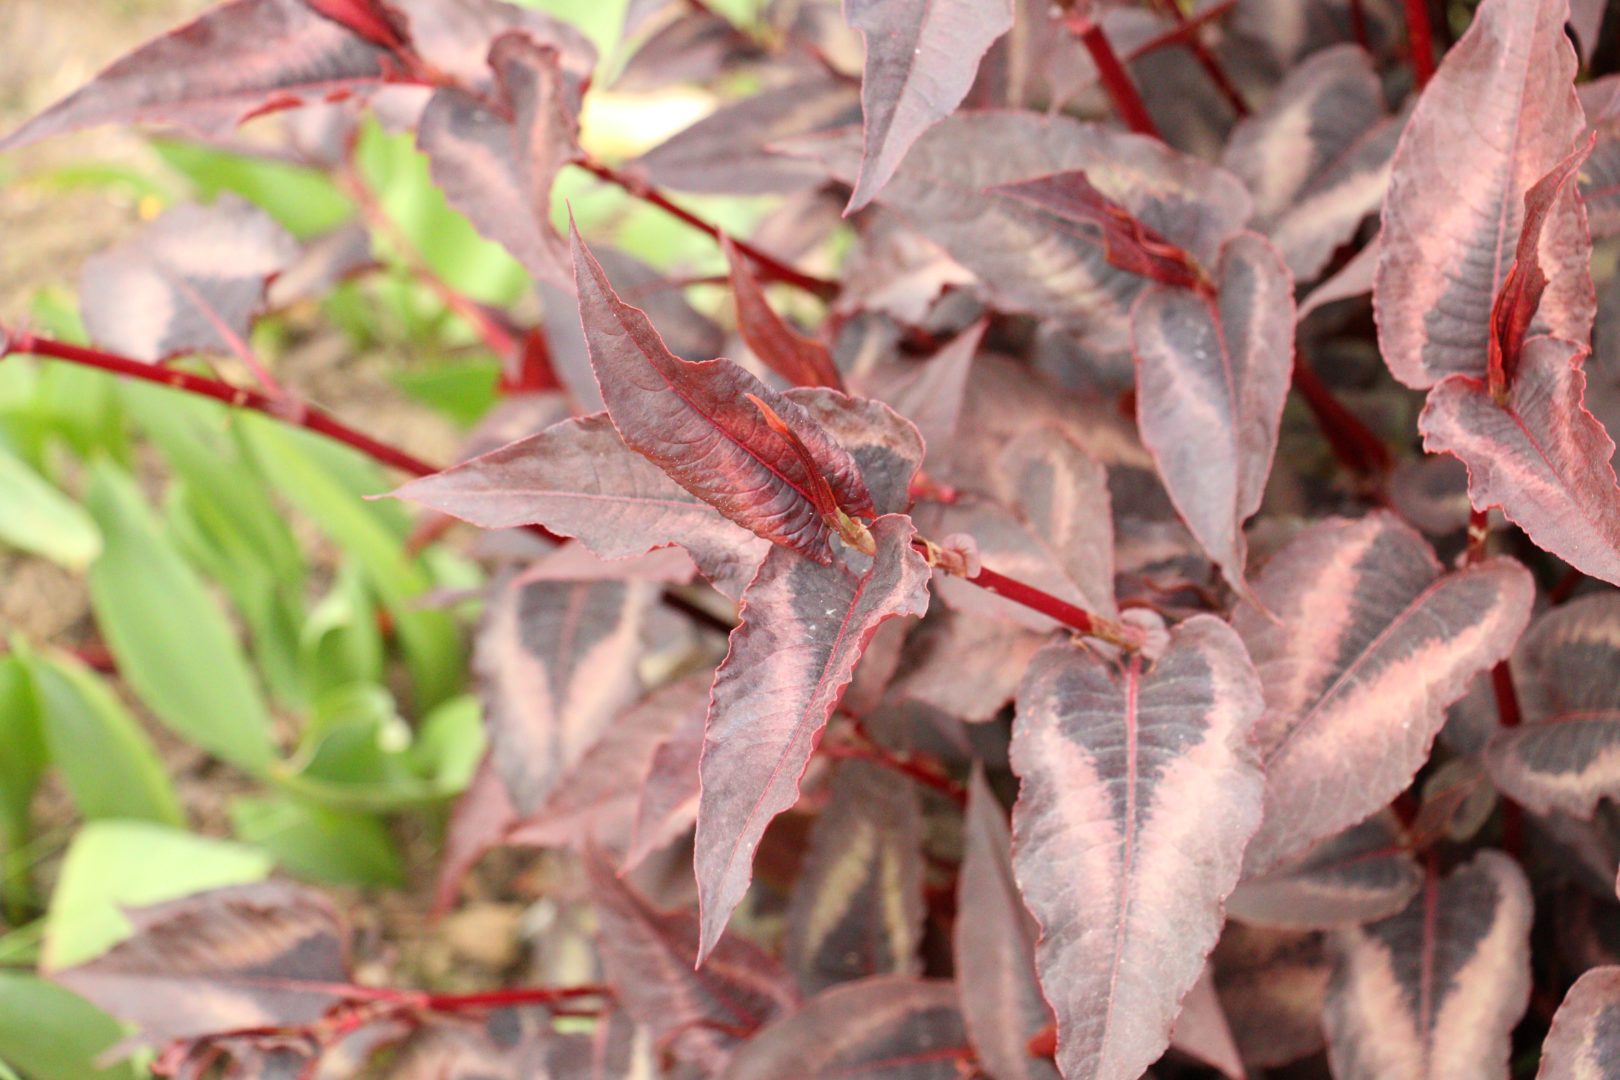 растение с пестными красными листьями со стрелочками - горец мелкоголовый Рэд Дрэгон, или Red Dragon», или Красный дракон